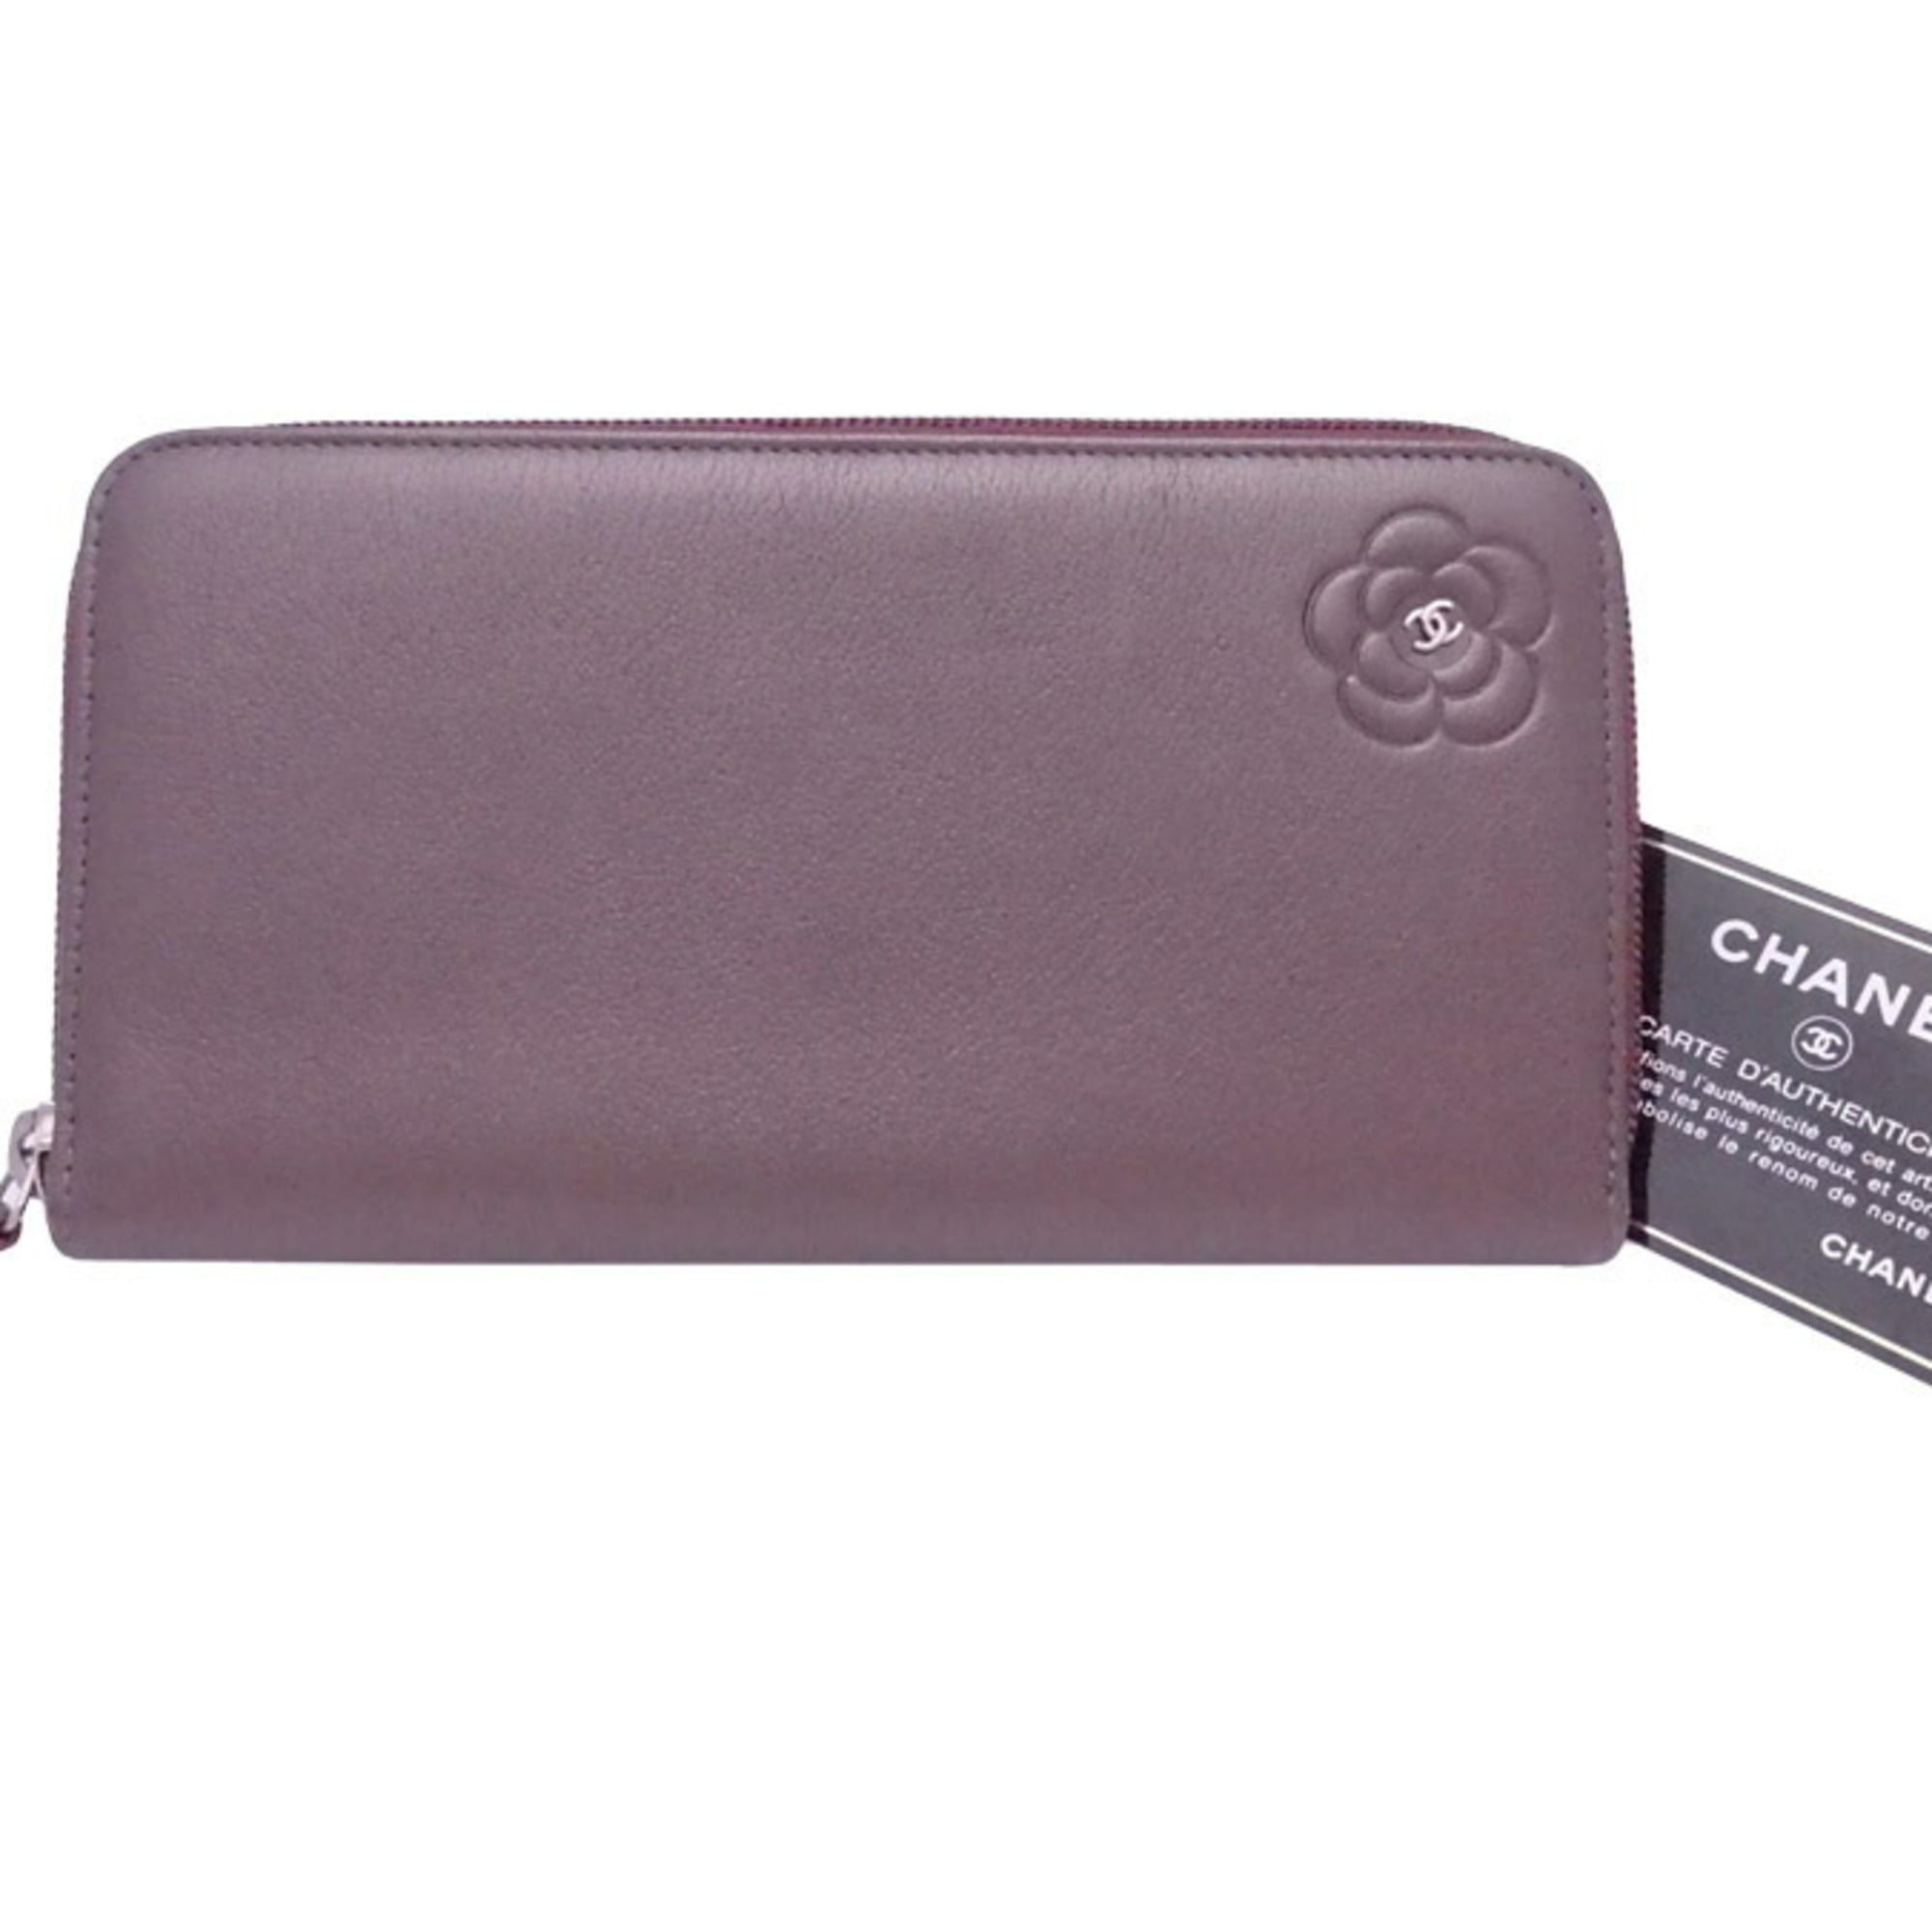 chanel zippy wallet